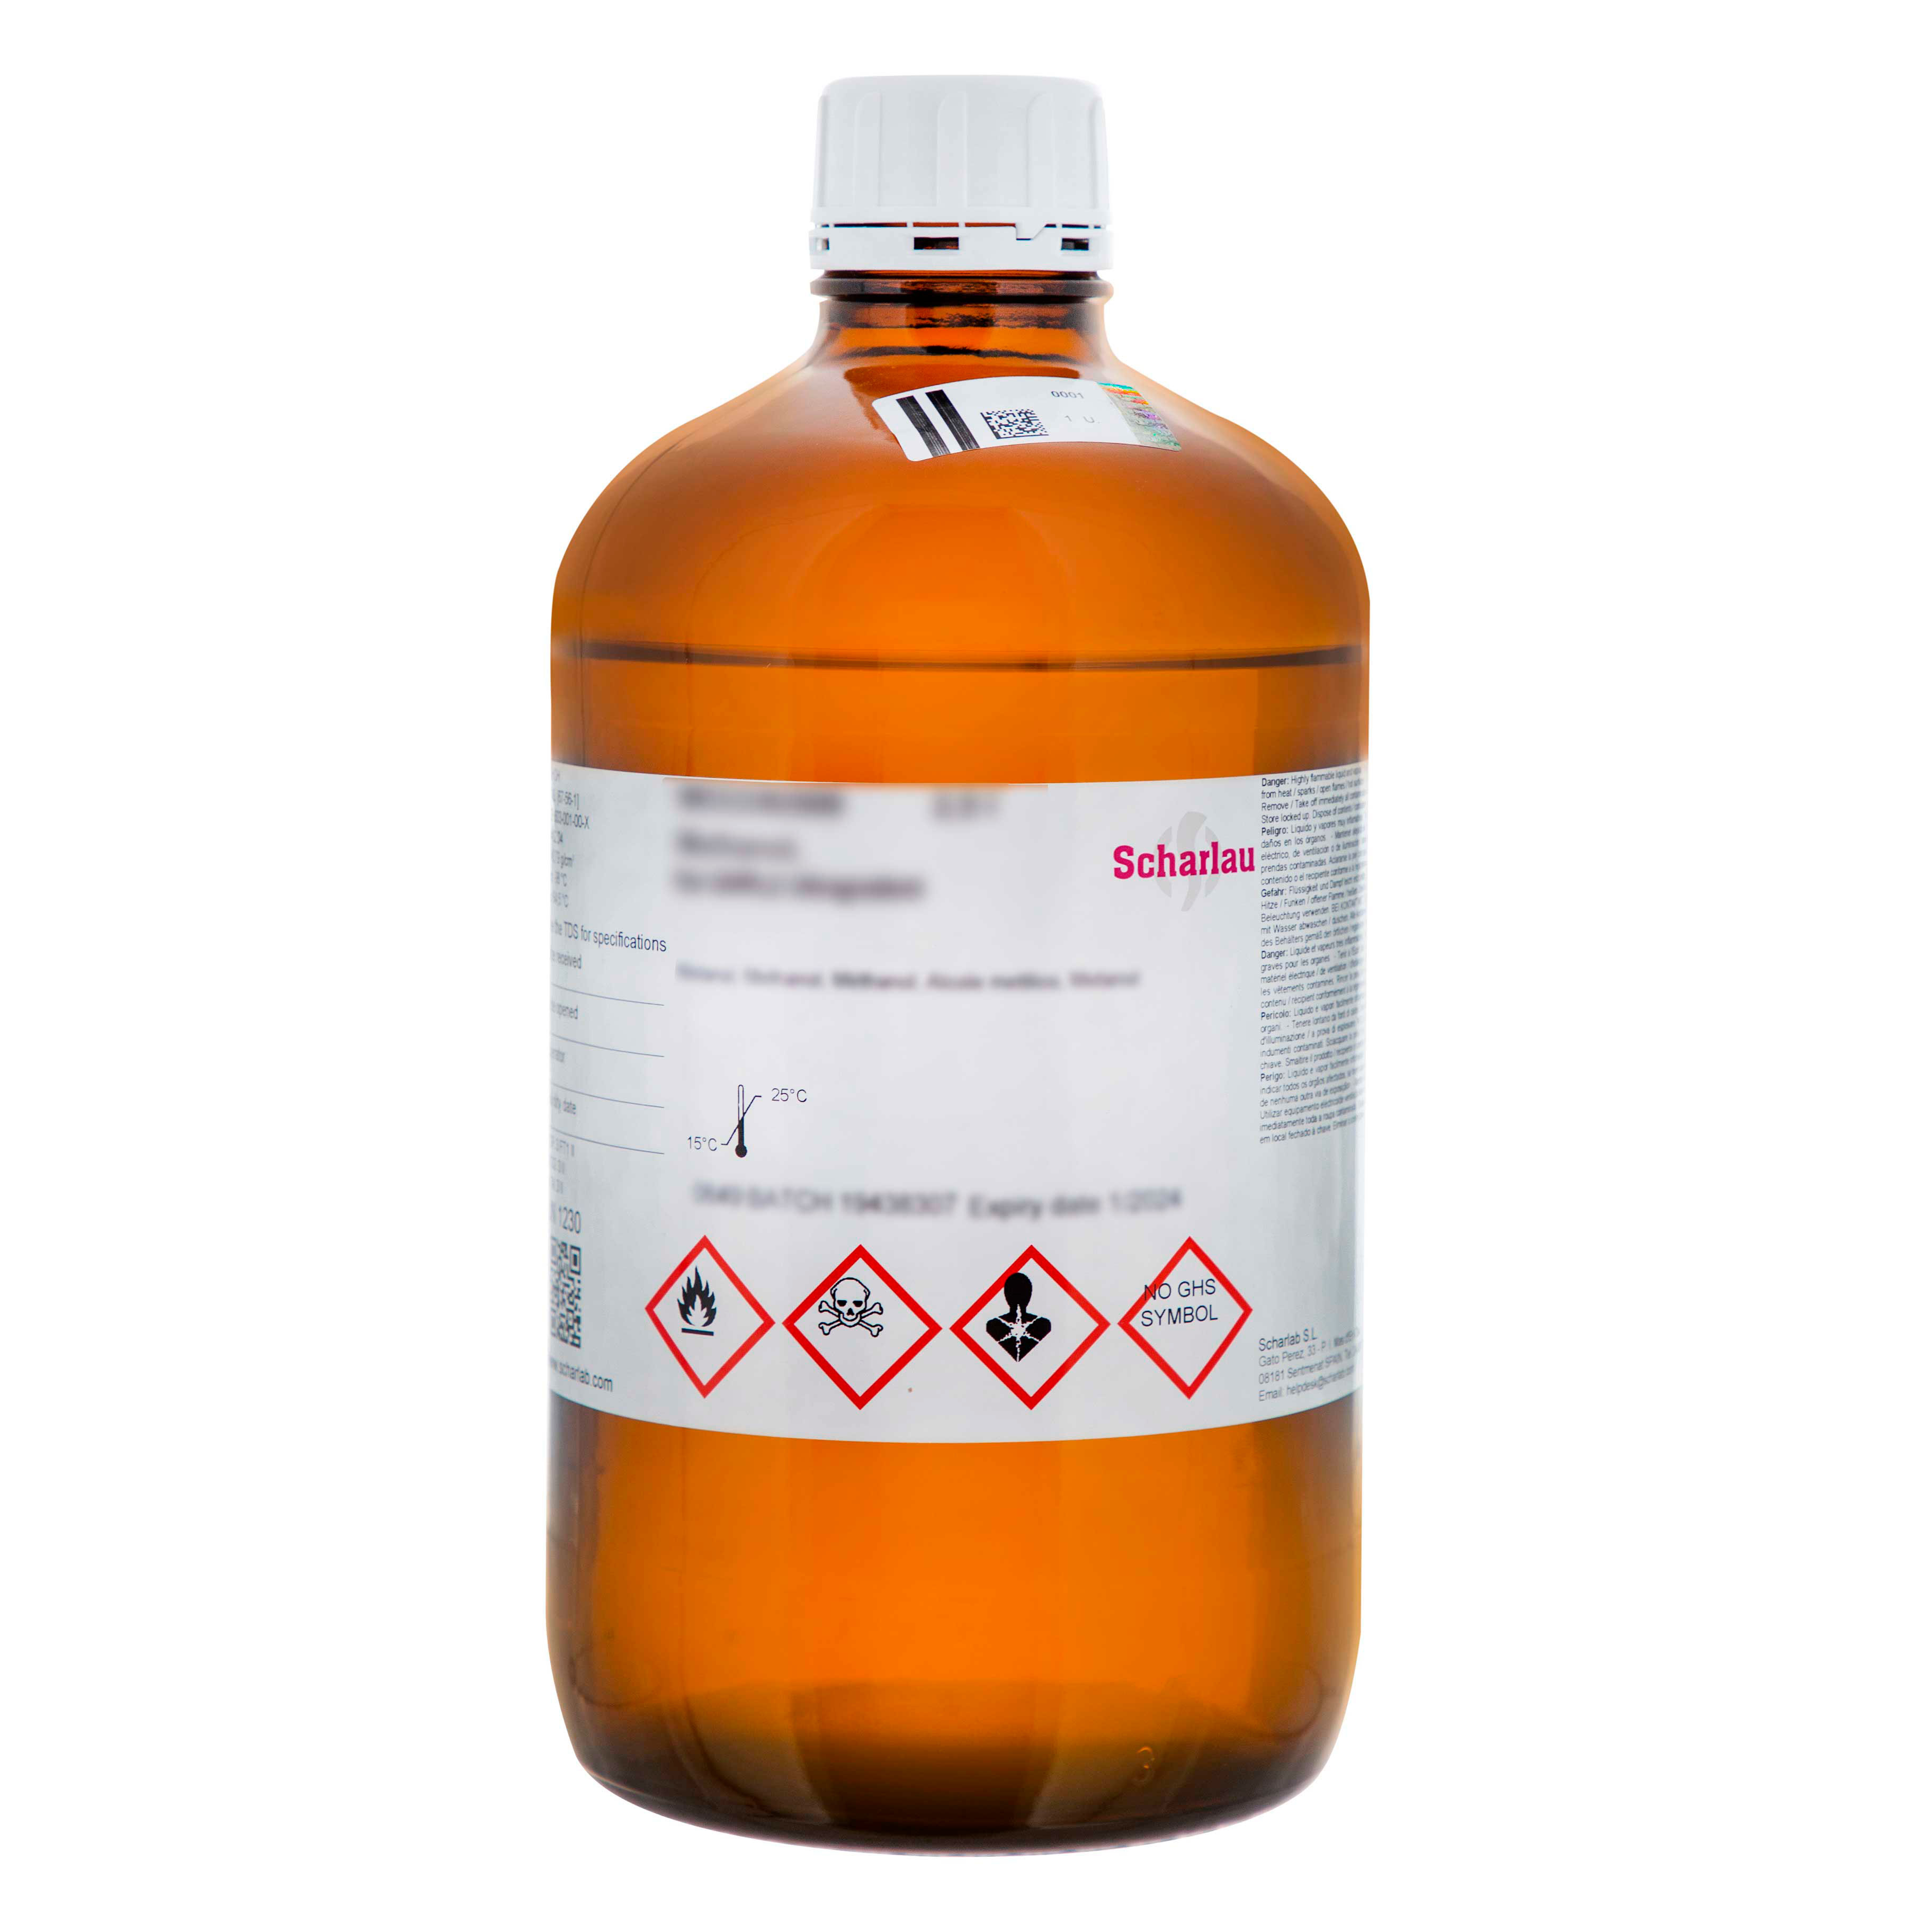 Etanol 96% v/v, Multisolvent®, para HPLC  ACS  UV-VIS, Alcohol etílico, Metilcarbinol